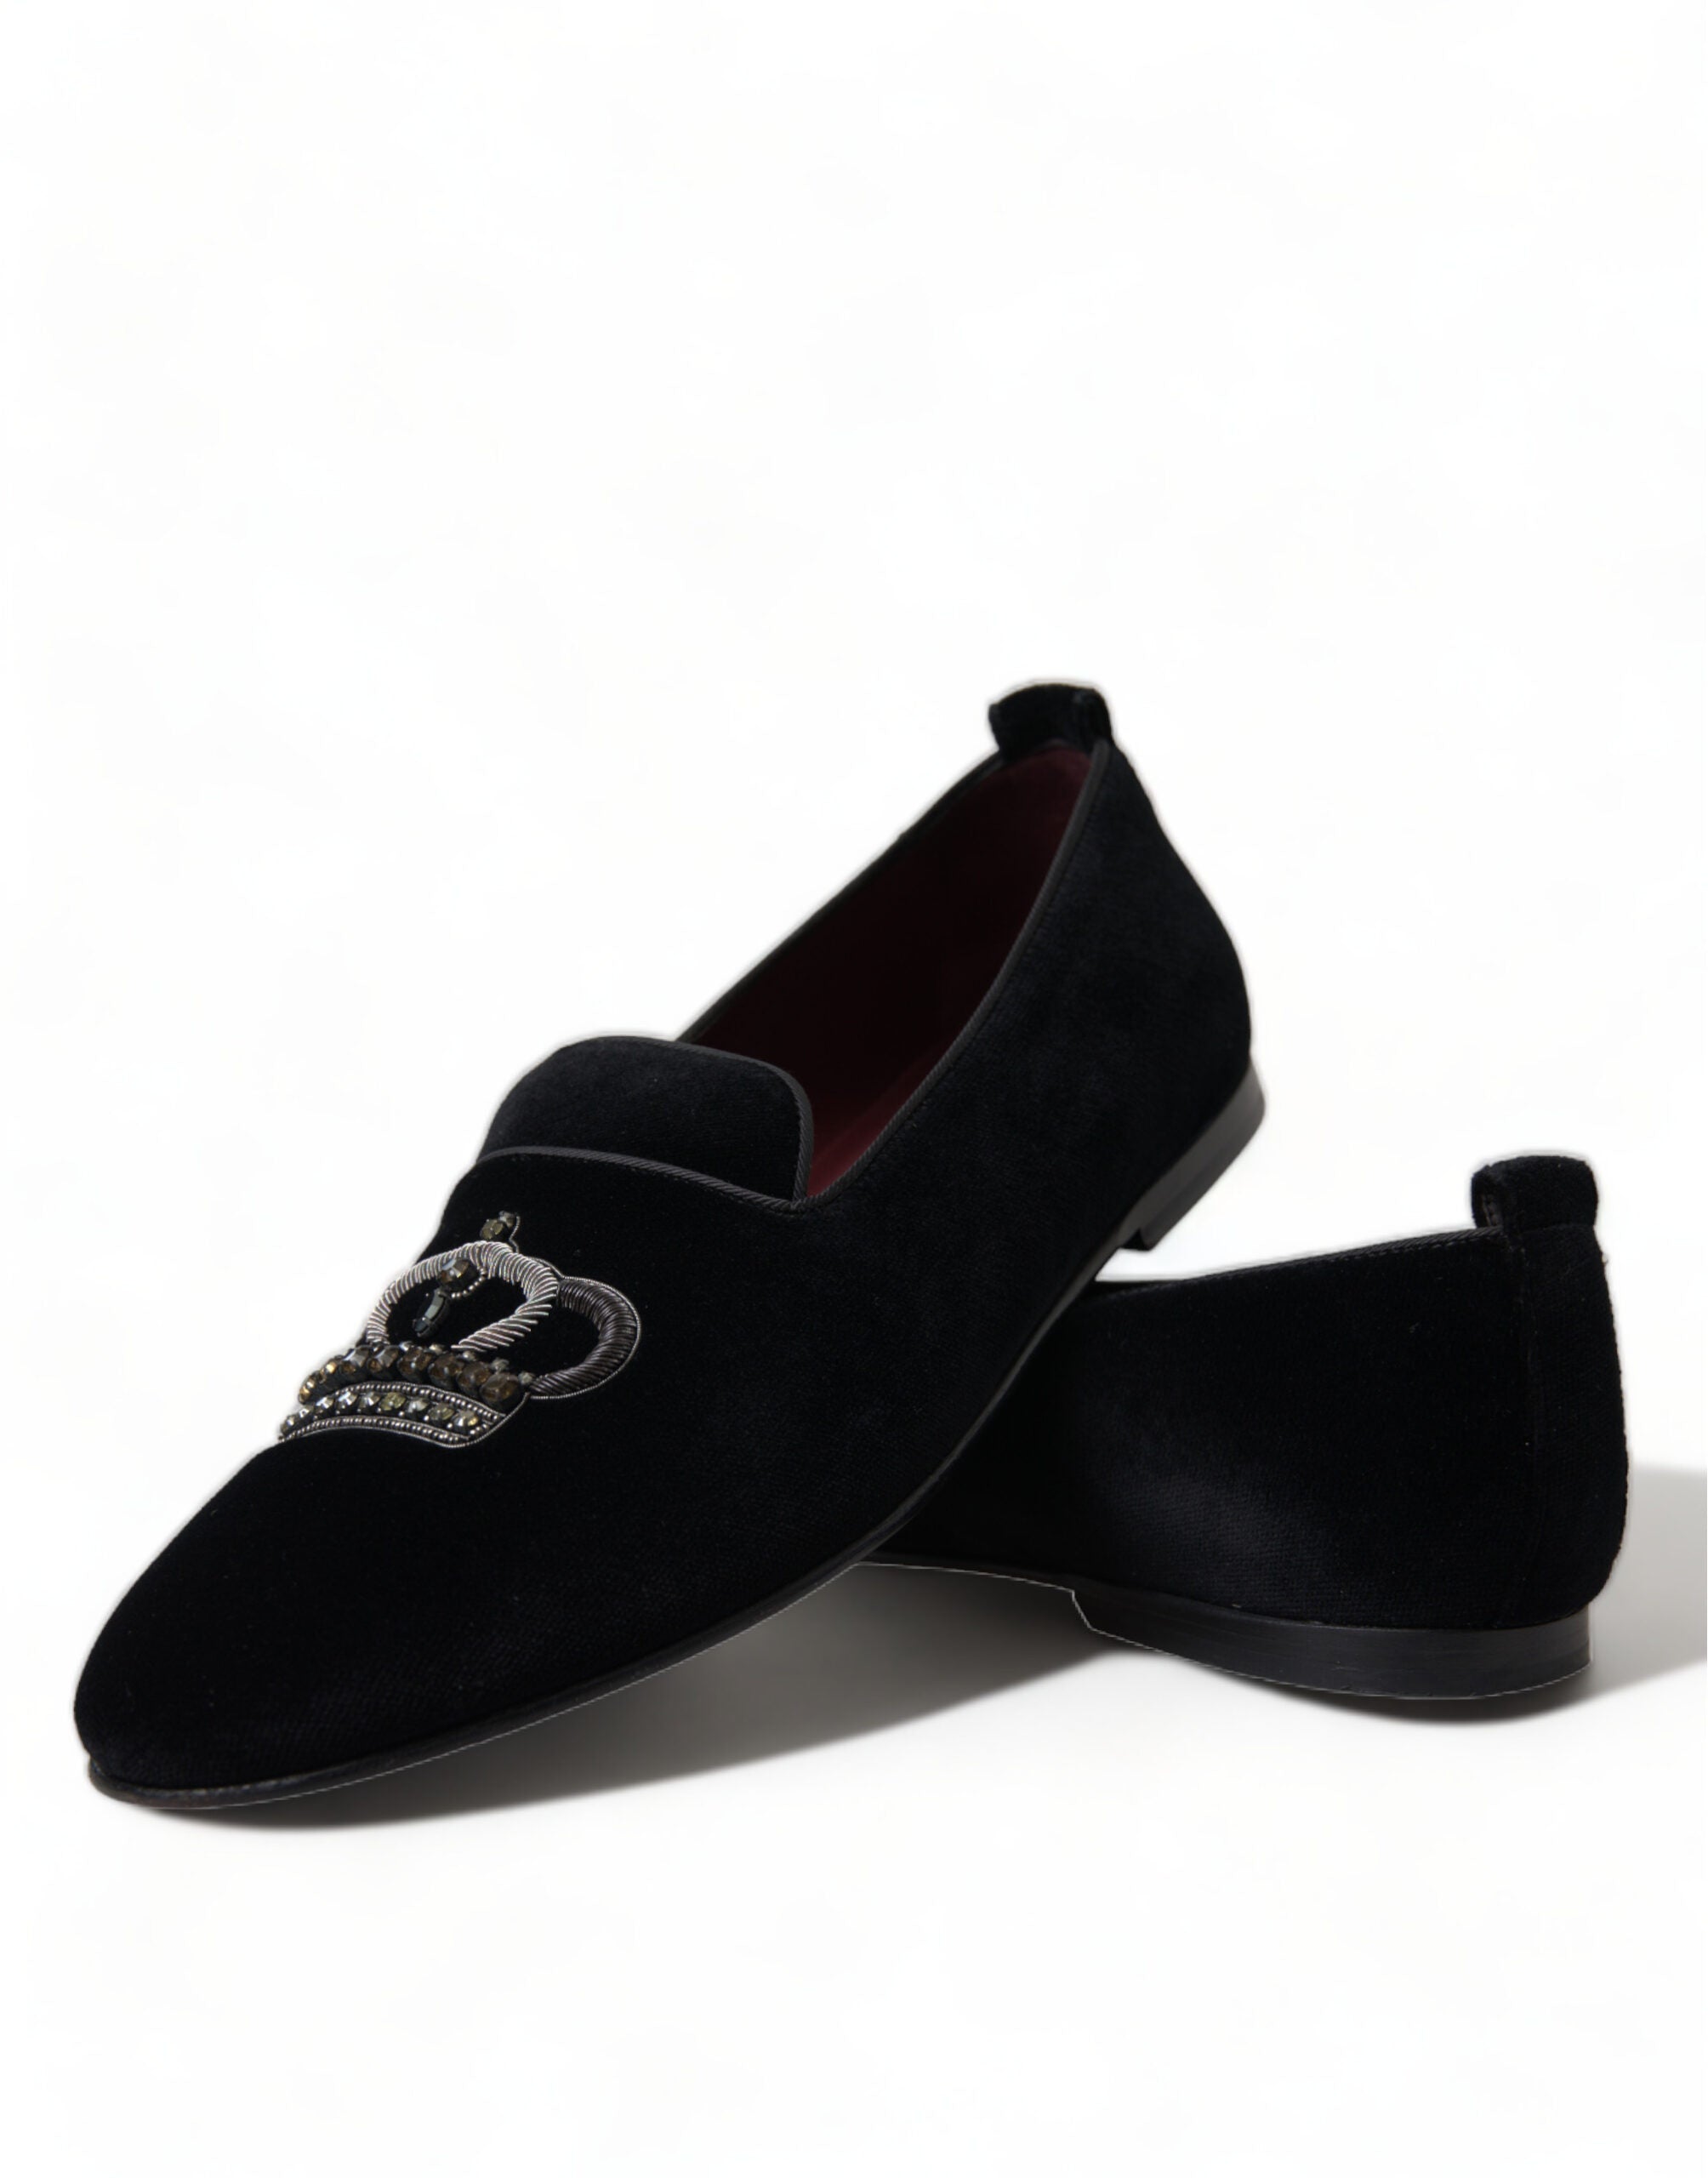 Dolce & Gabbana Black Velvet Crystal Crown Loafers Dress Shoes